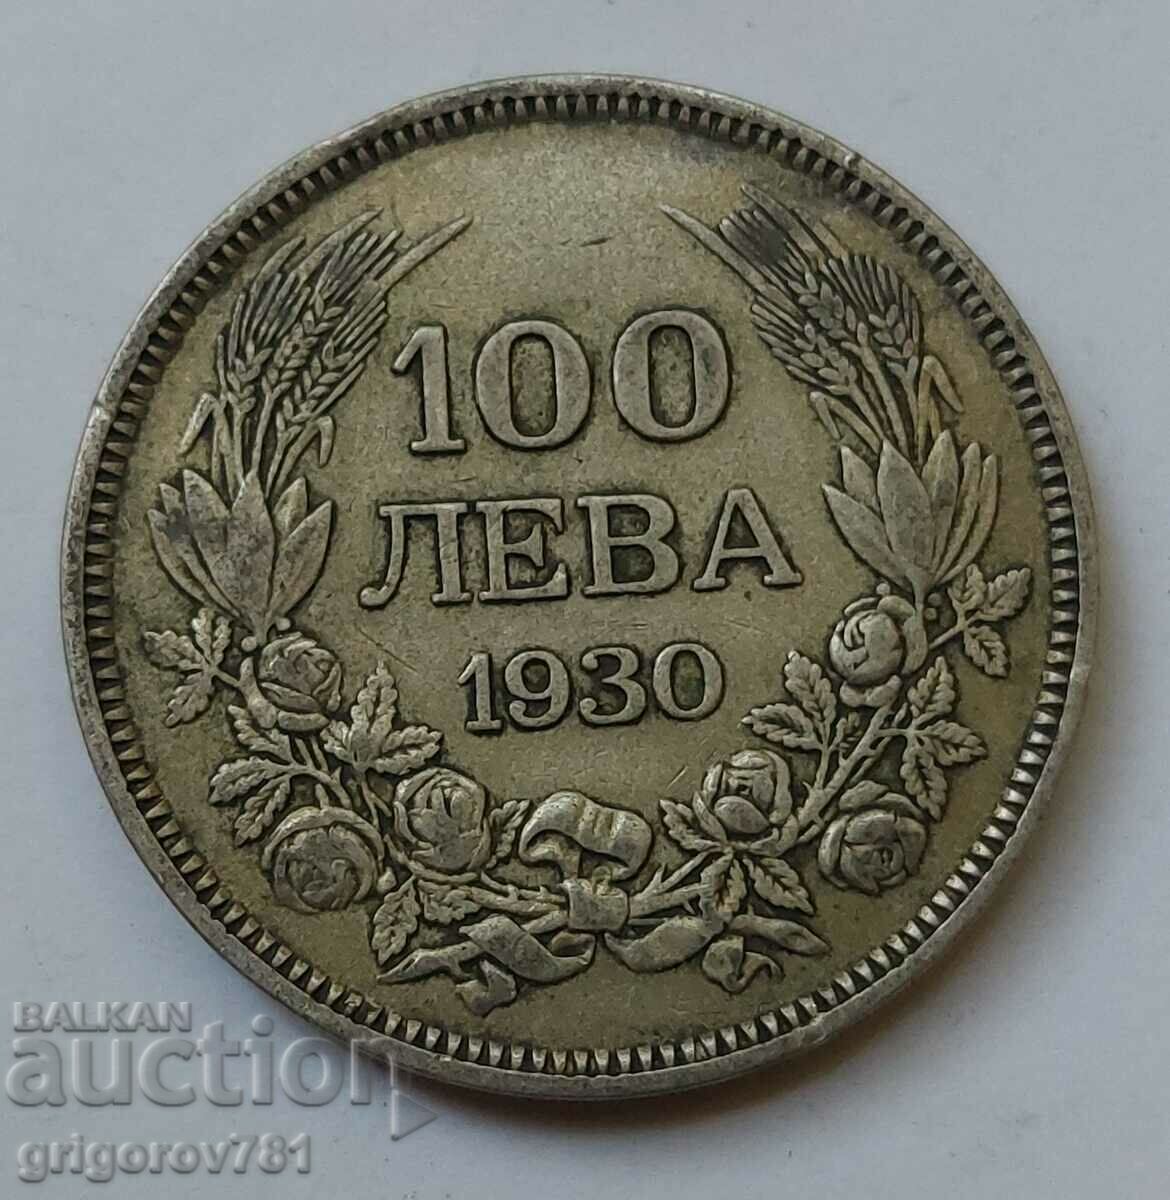 100 leva silver Bulgaria 1930 - silver coin #48